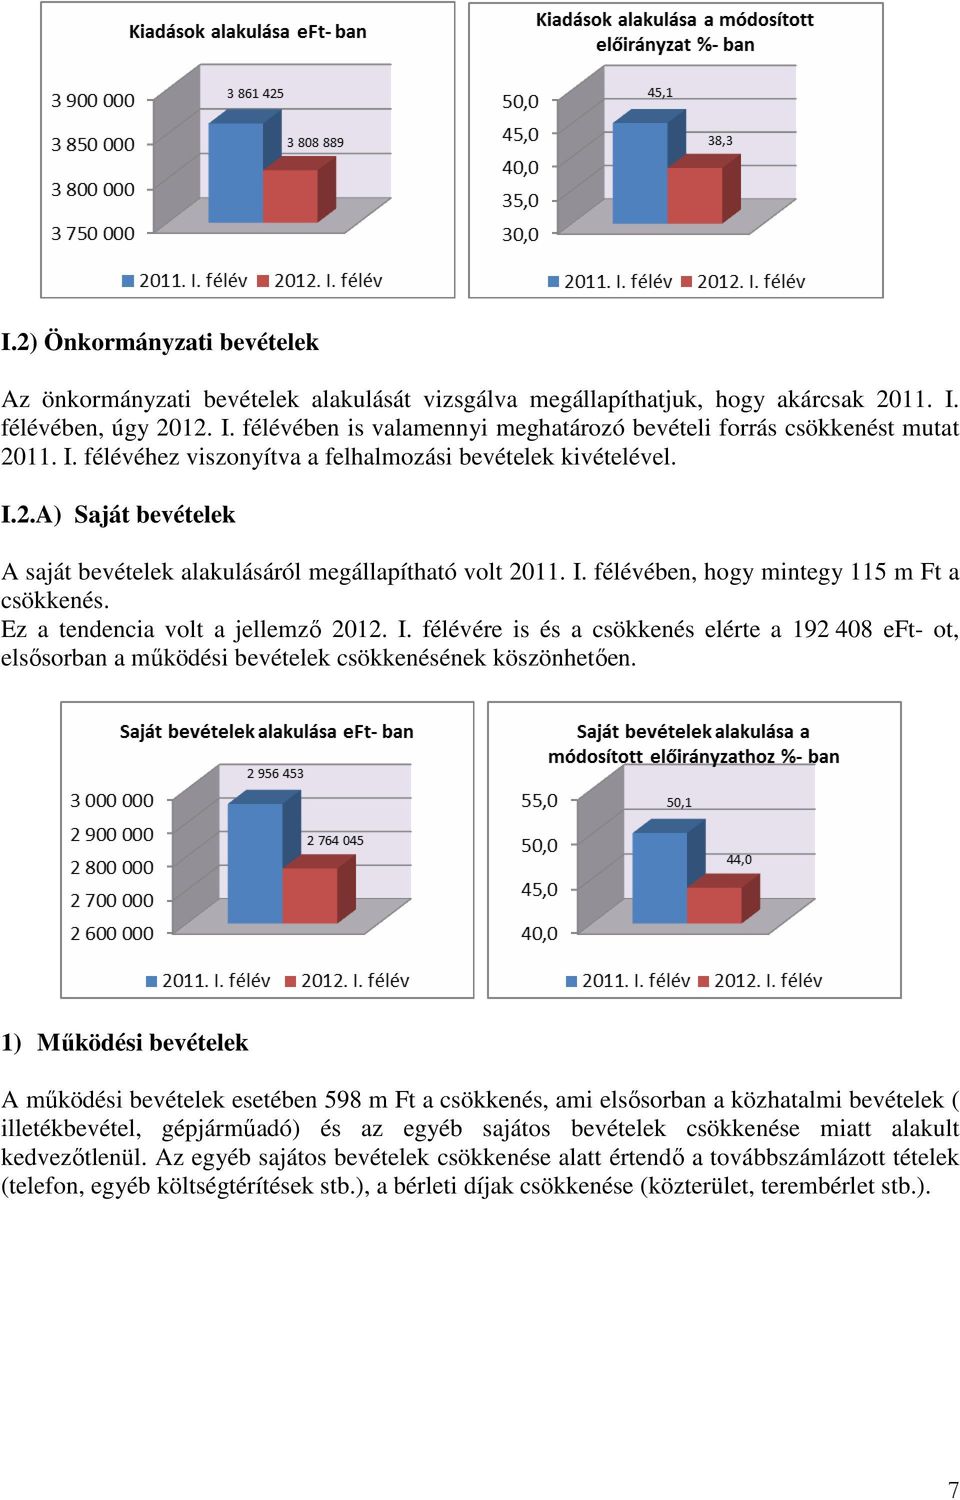 Ez a tendencia volt a jellemzı 2012. I. félévére is és a csökkenés elérte a 192 408 eft- ot, elsısorban a mőködési bevételek csökkenésének köszönhetıen.